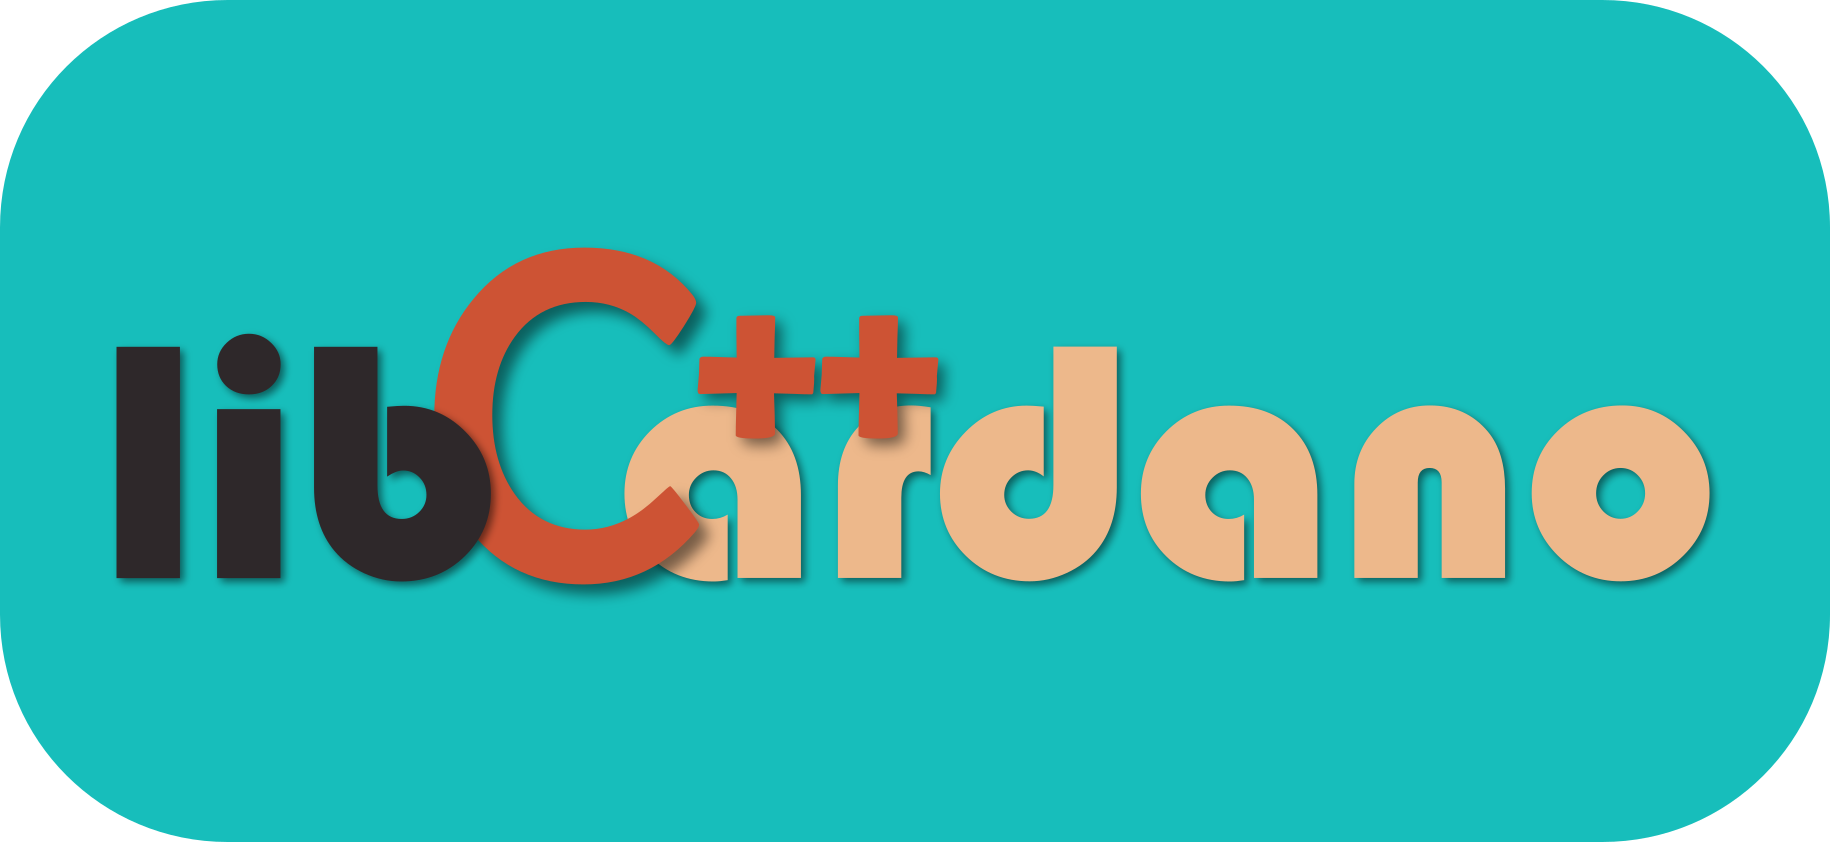 LibCardano logo